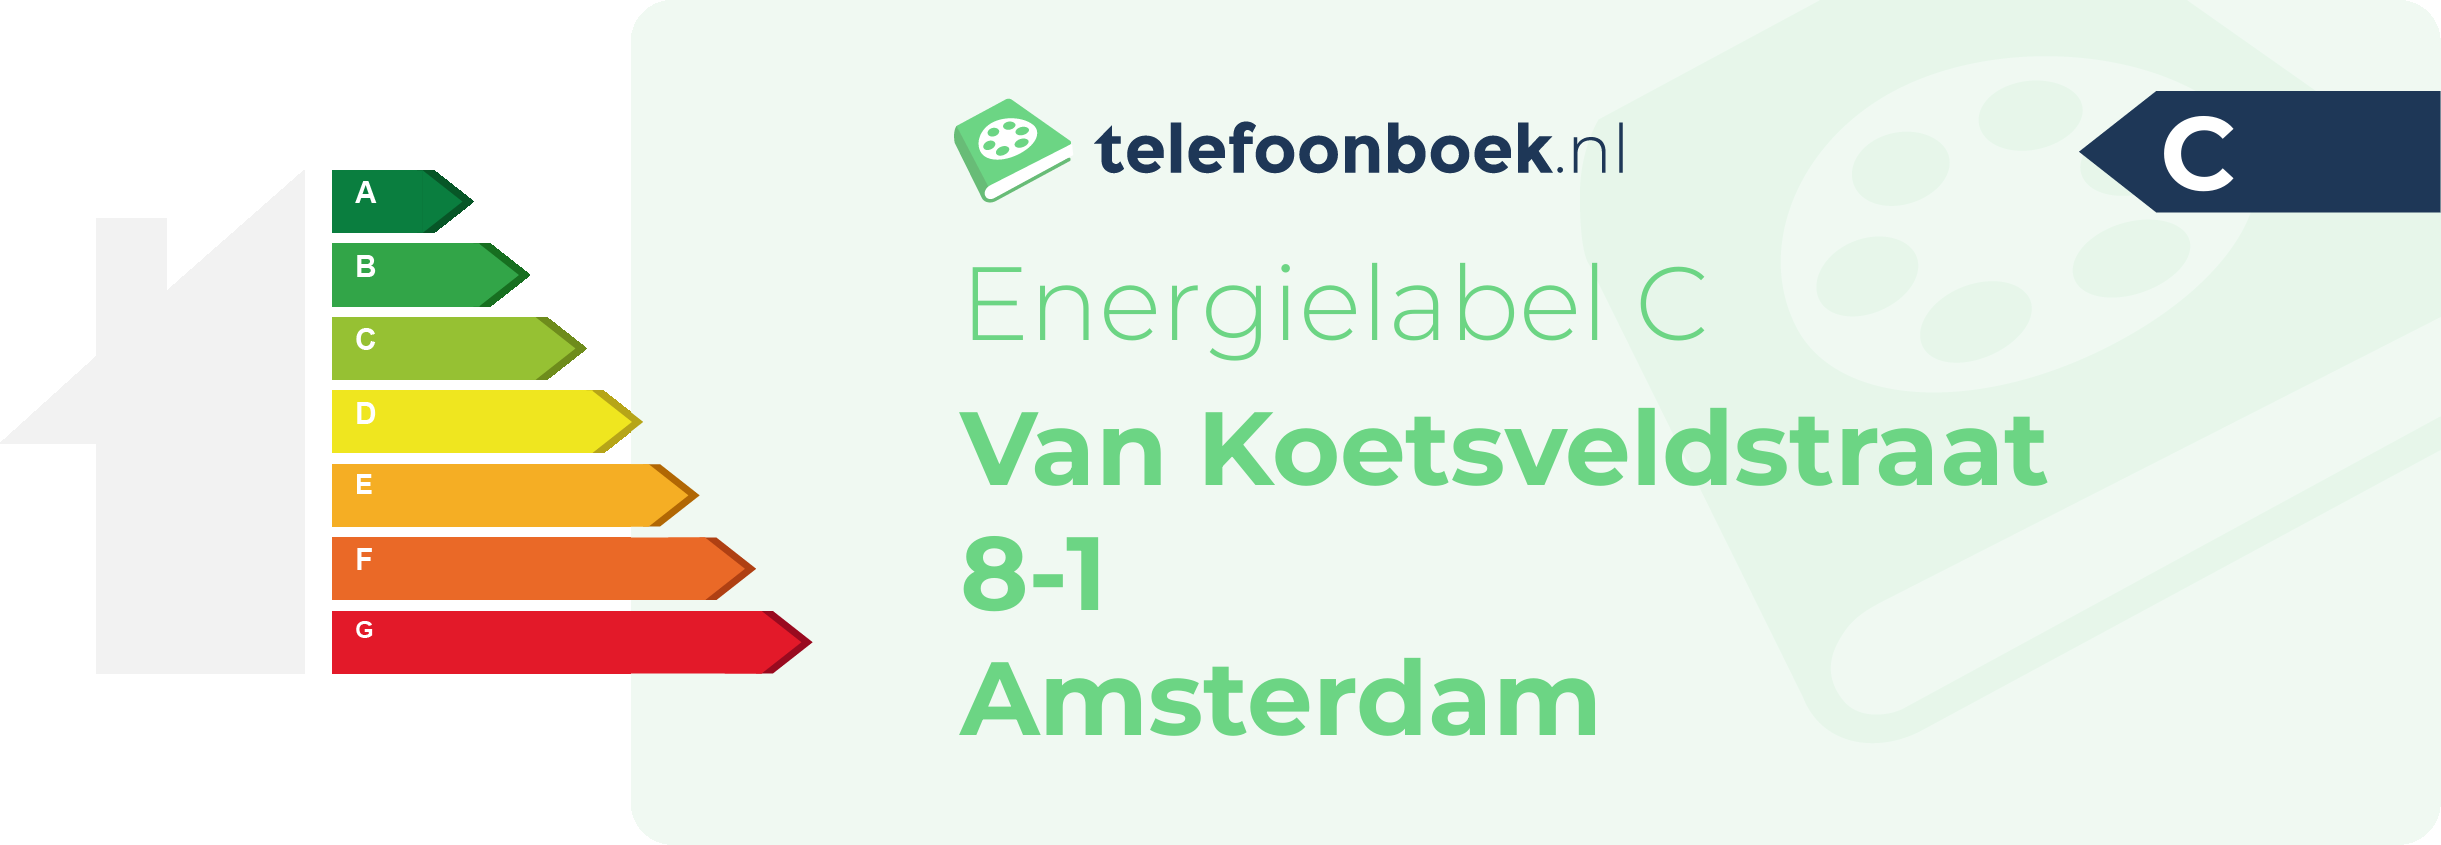 Energielabel Van Koetsveldstraat 8-1 Amsterdam